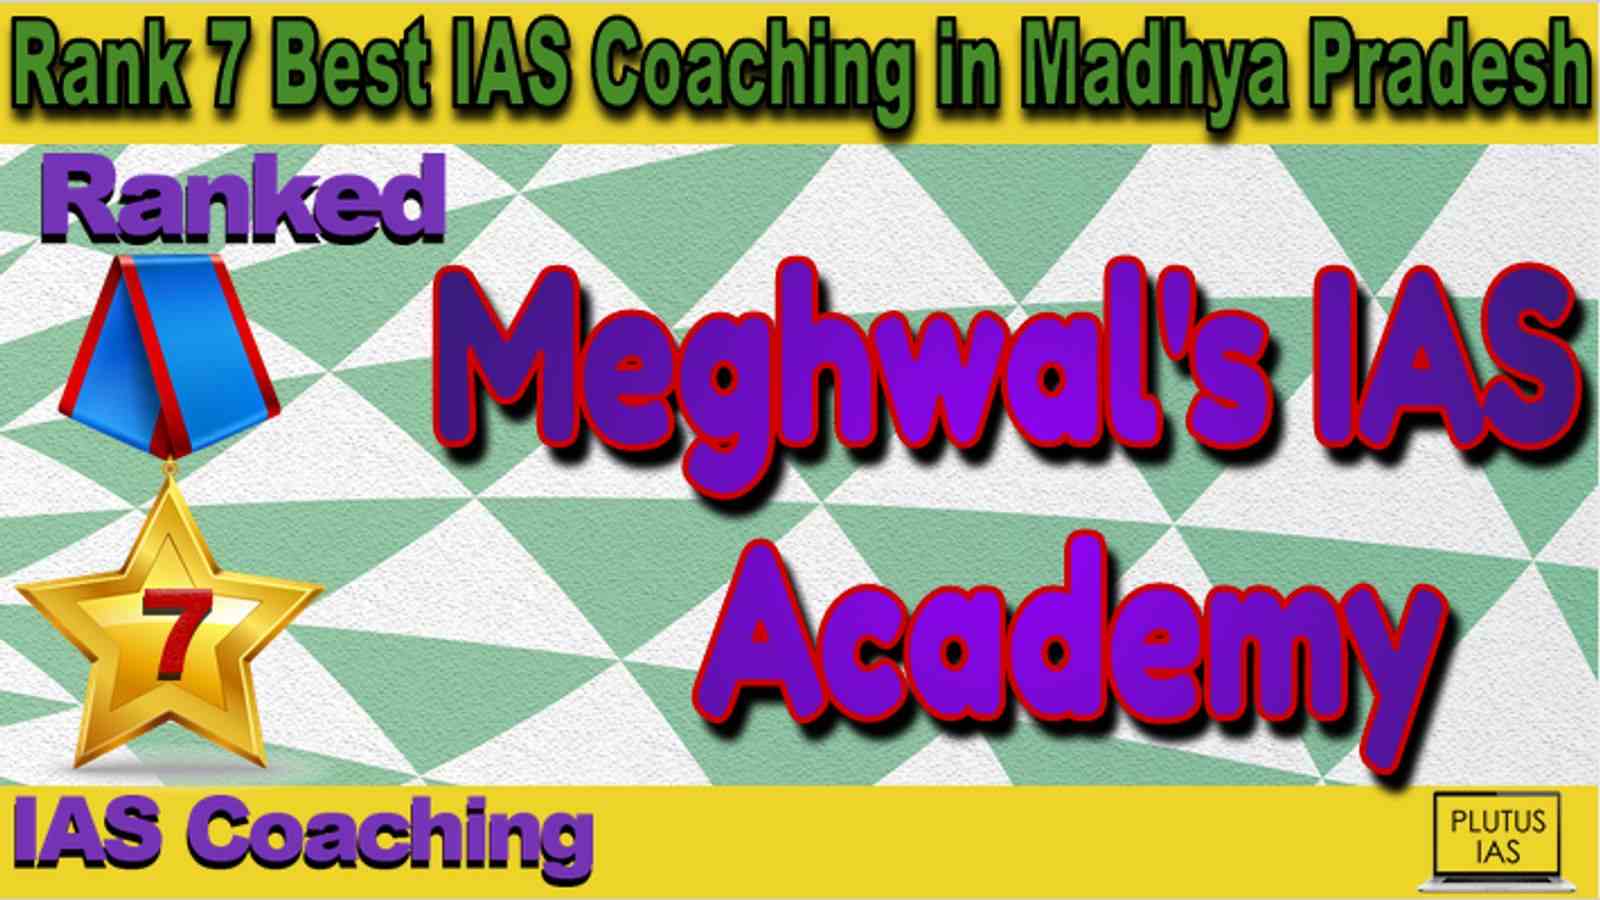 Rank 7 Best IAS Coaching in Madhya Pradesh